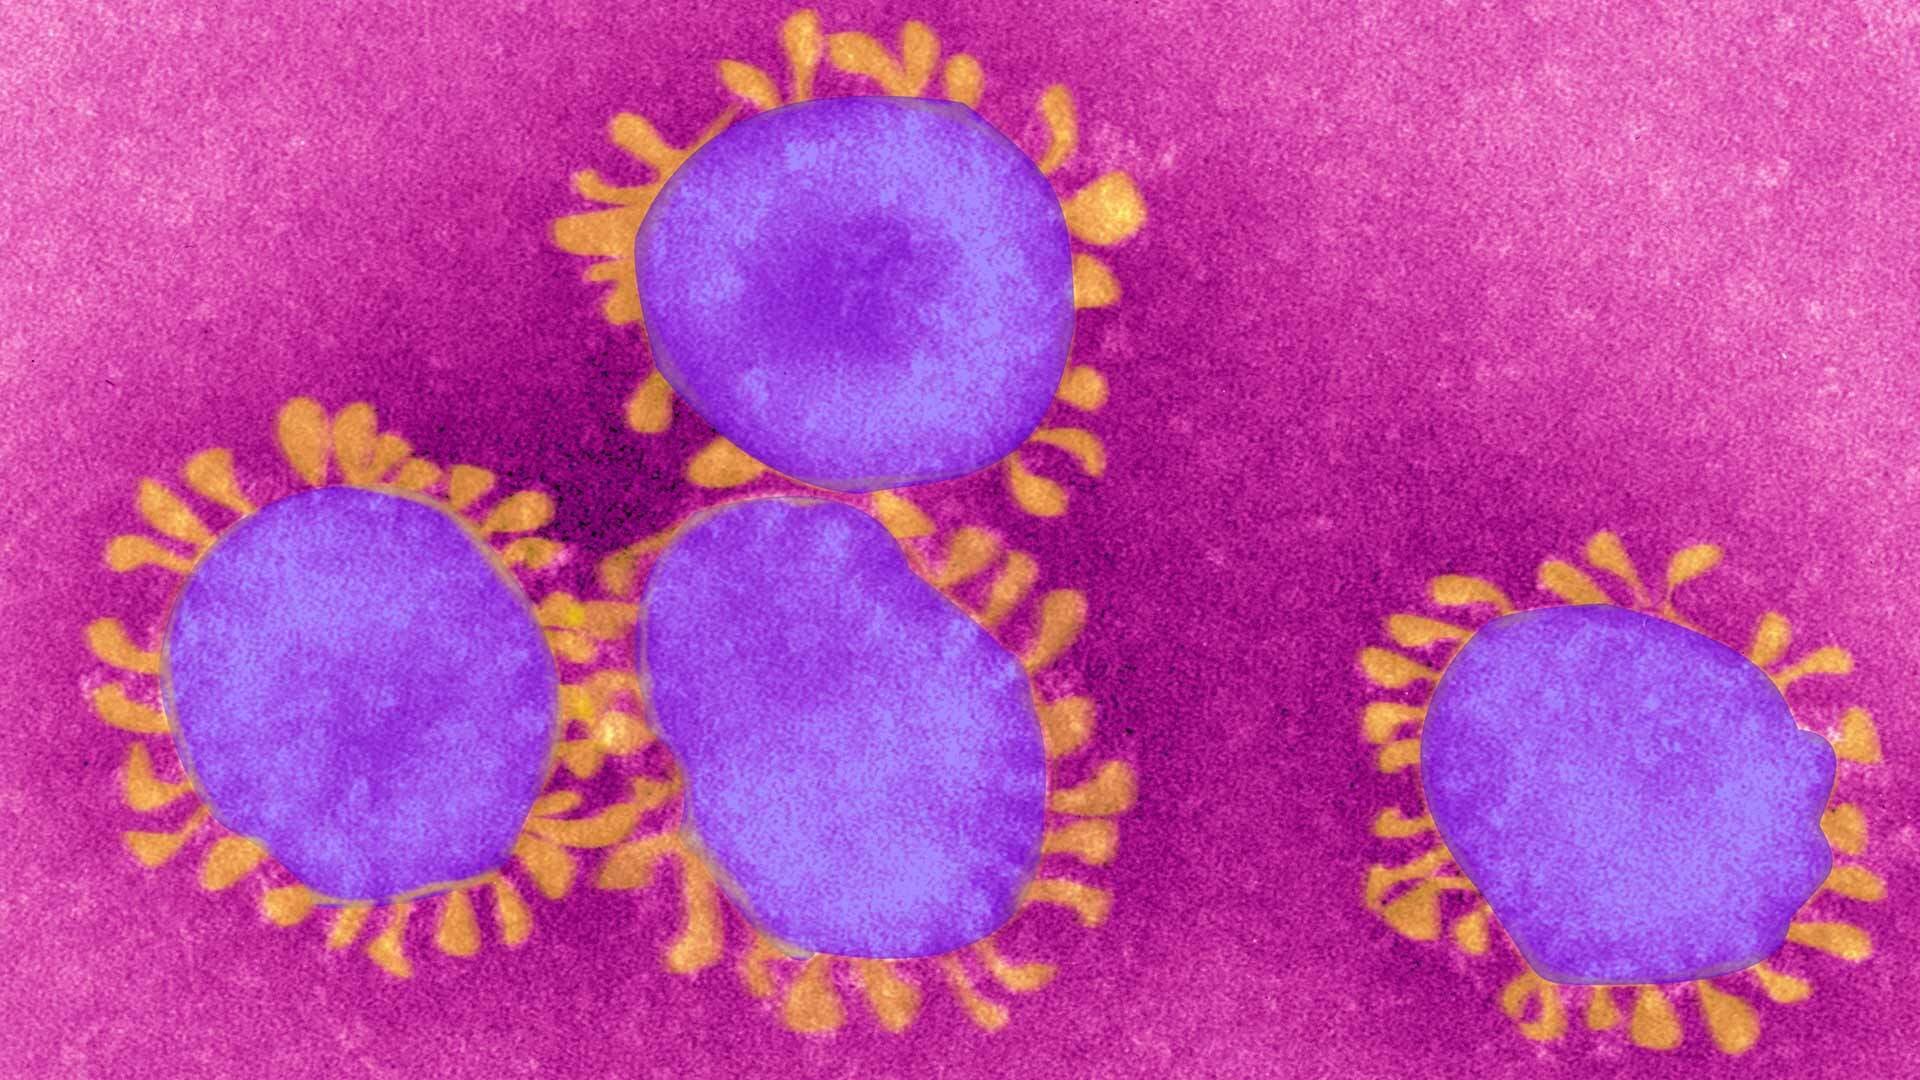 Pink and purple image of coronavirus